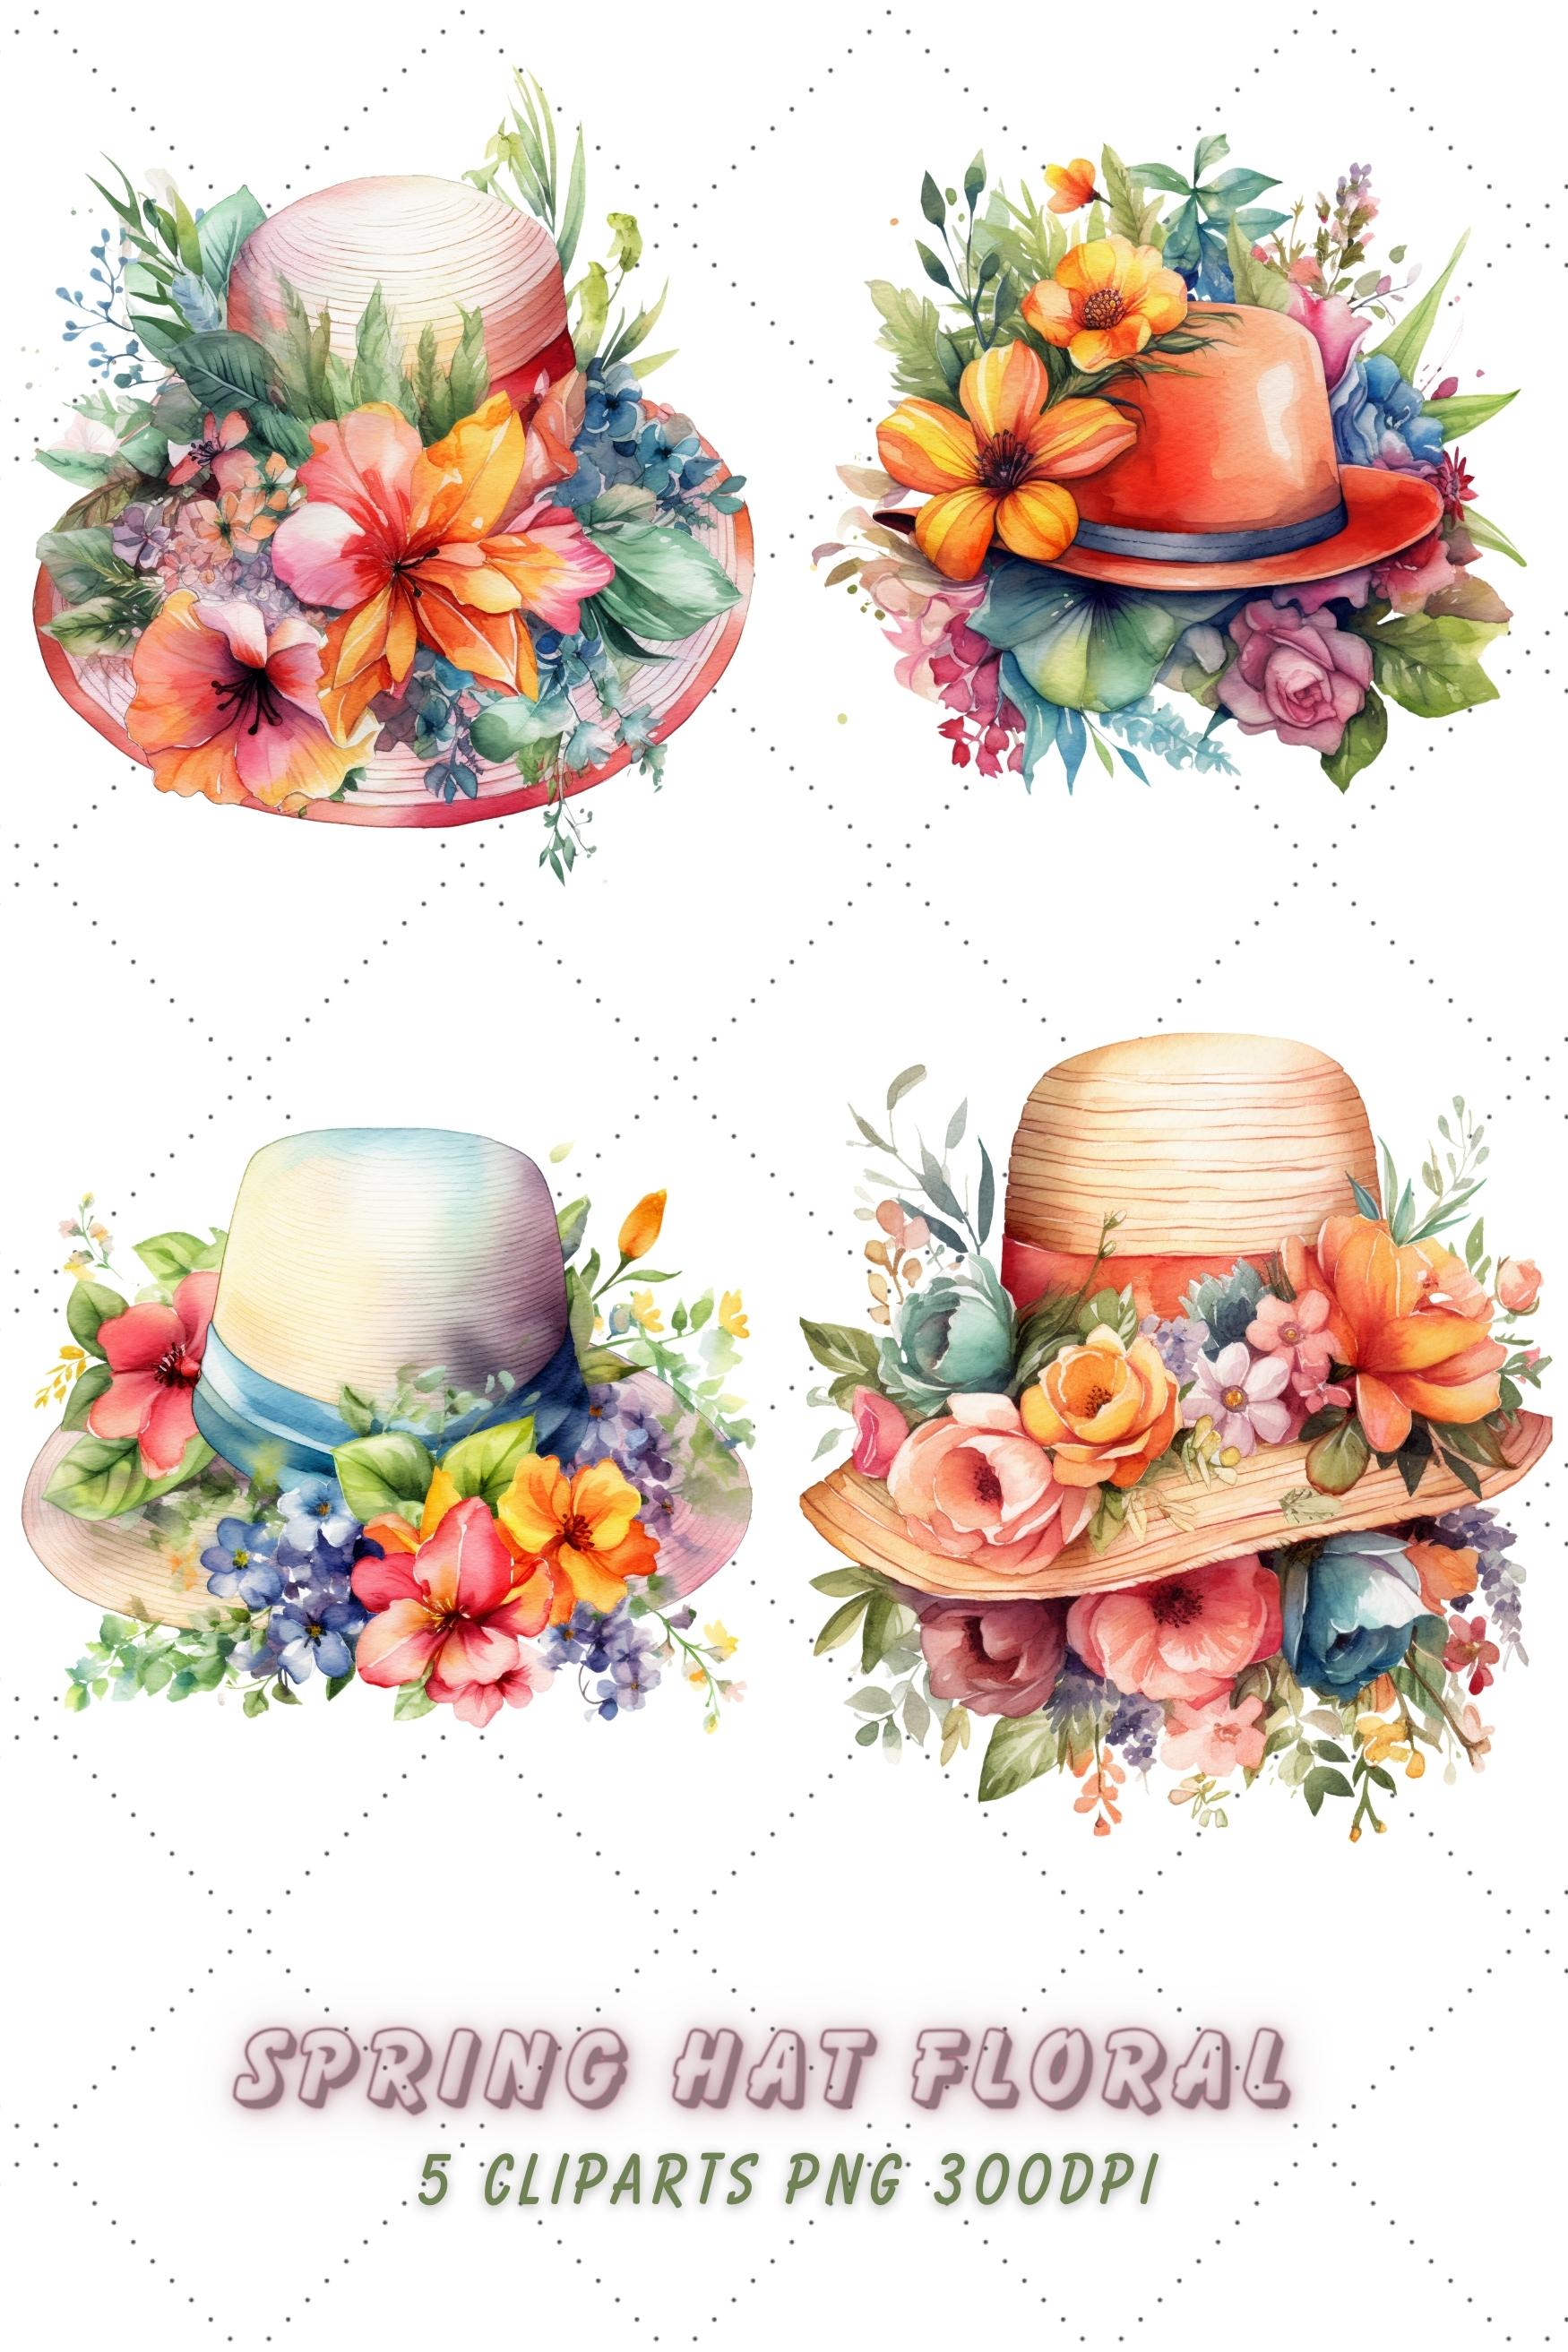 Watercolor Spring hat Floral Clipart Bundle pinterest preview image.